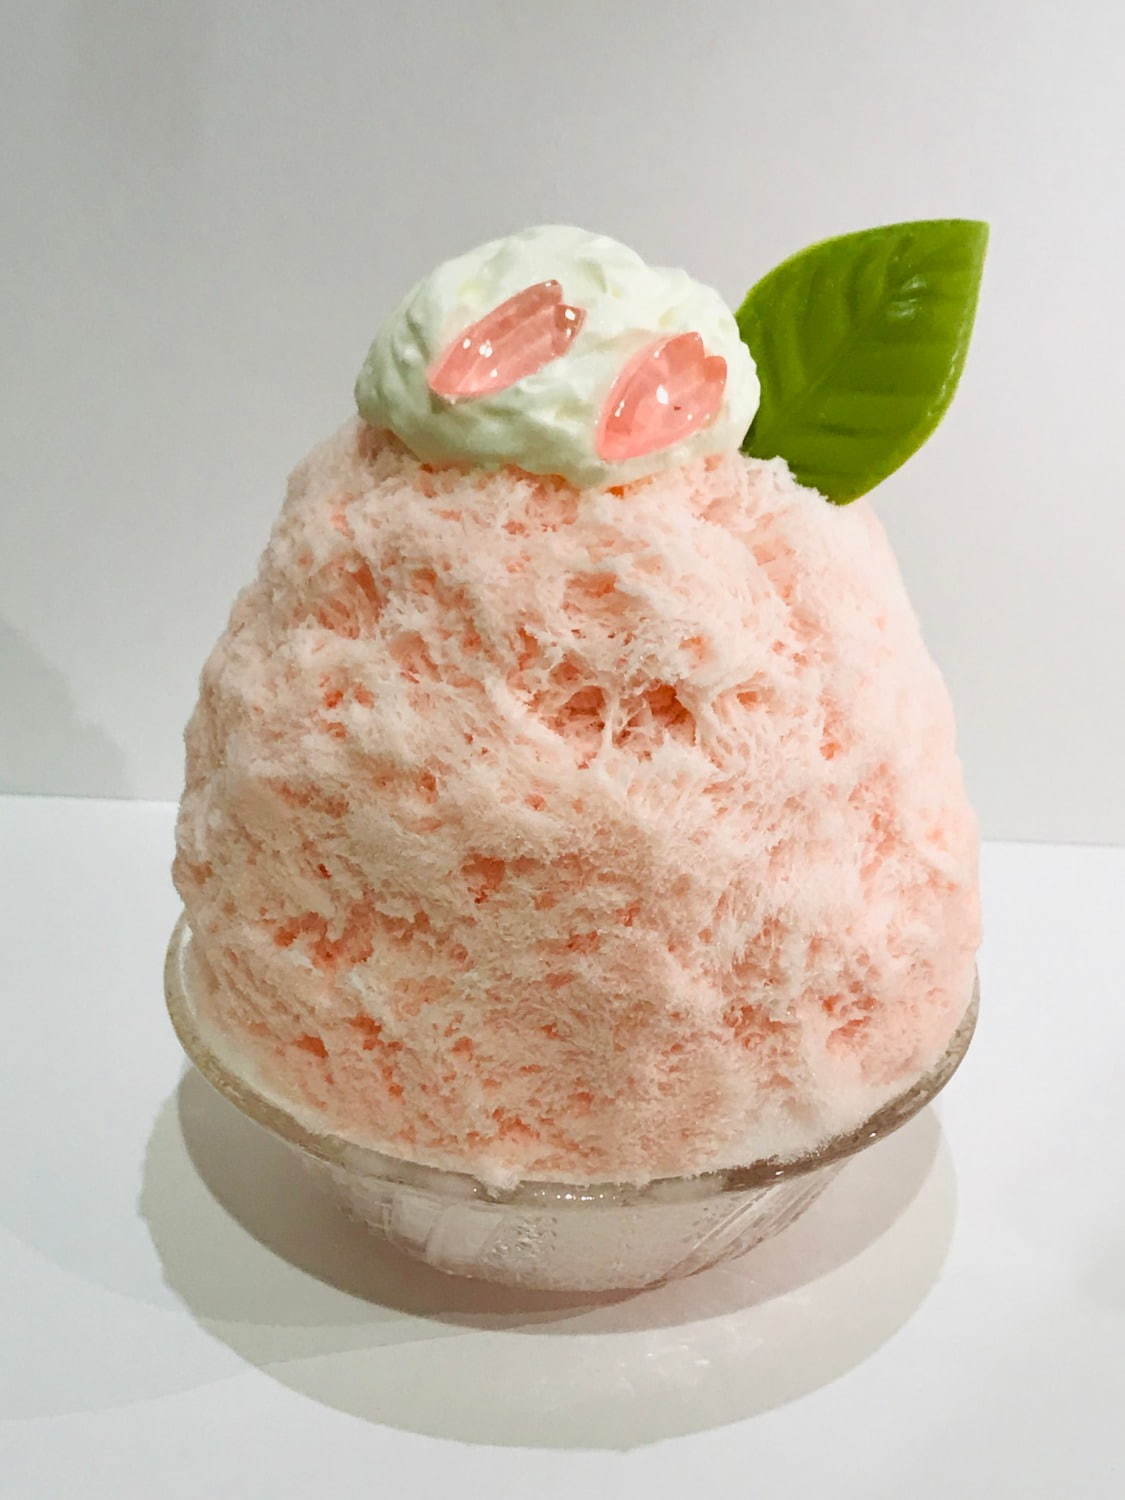 ＜かき氷工房 雪菓＞花びら舞い落ちる“桜かき氷”、天然氷ならではのフワフワ食感で